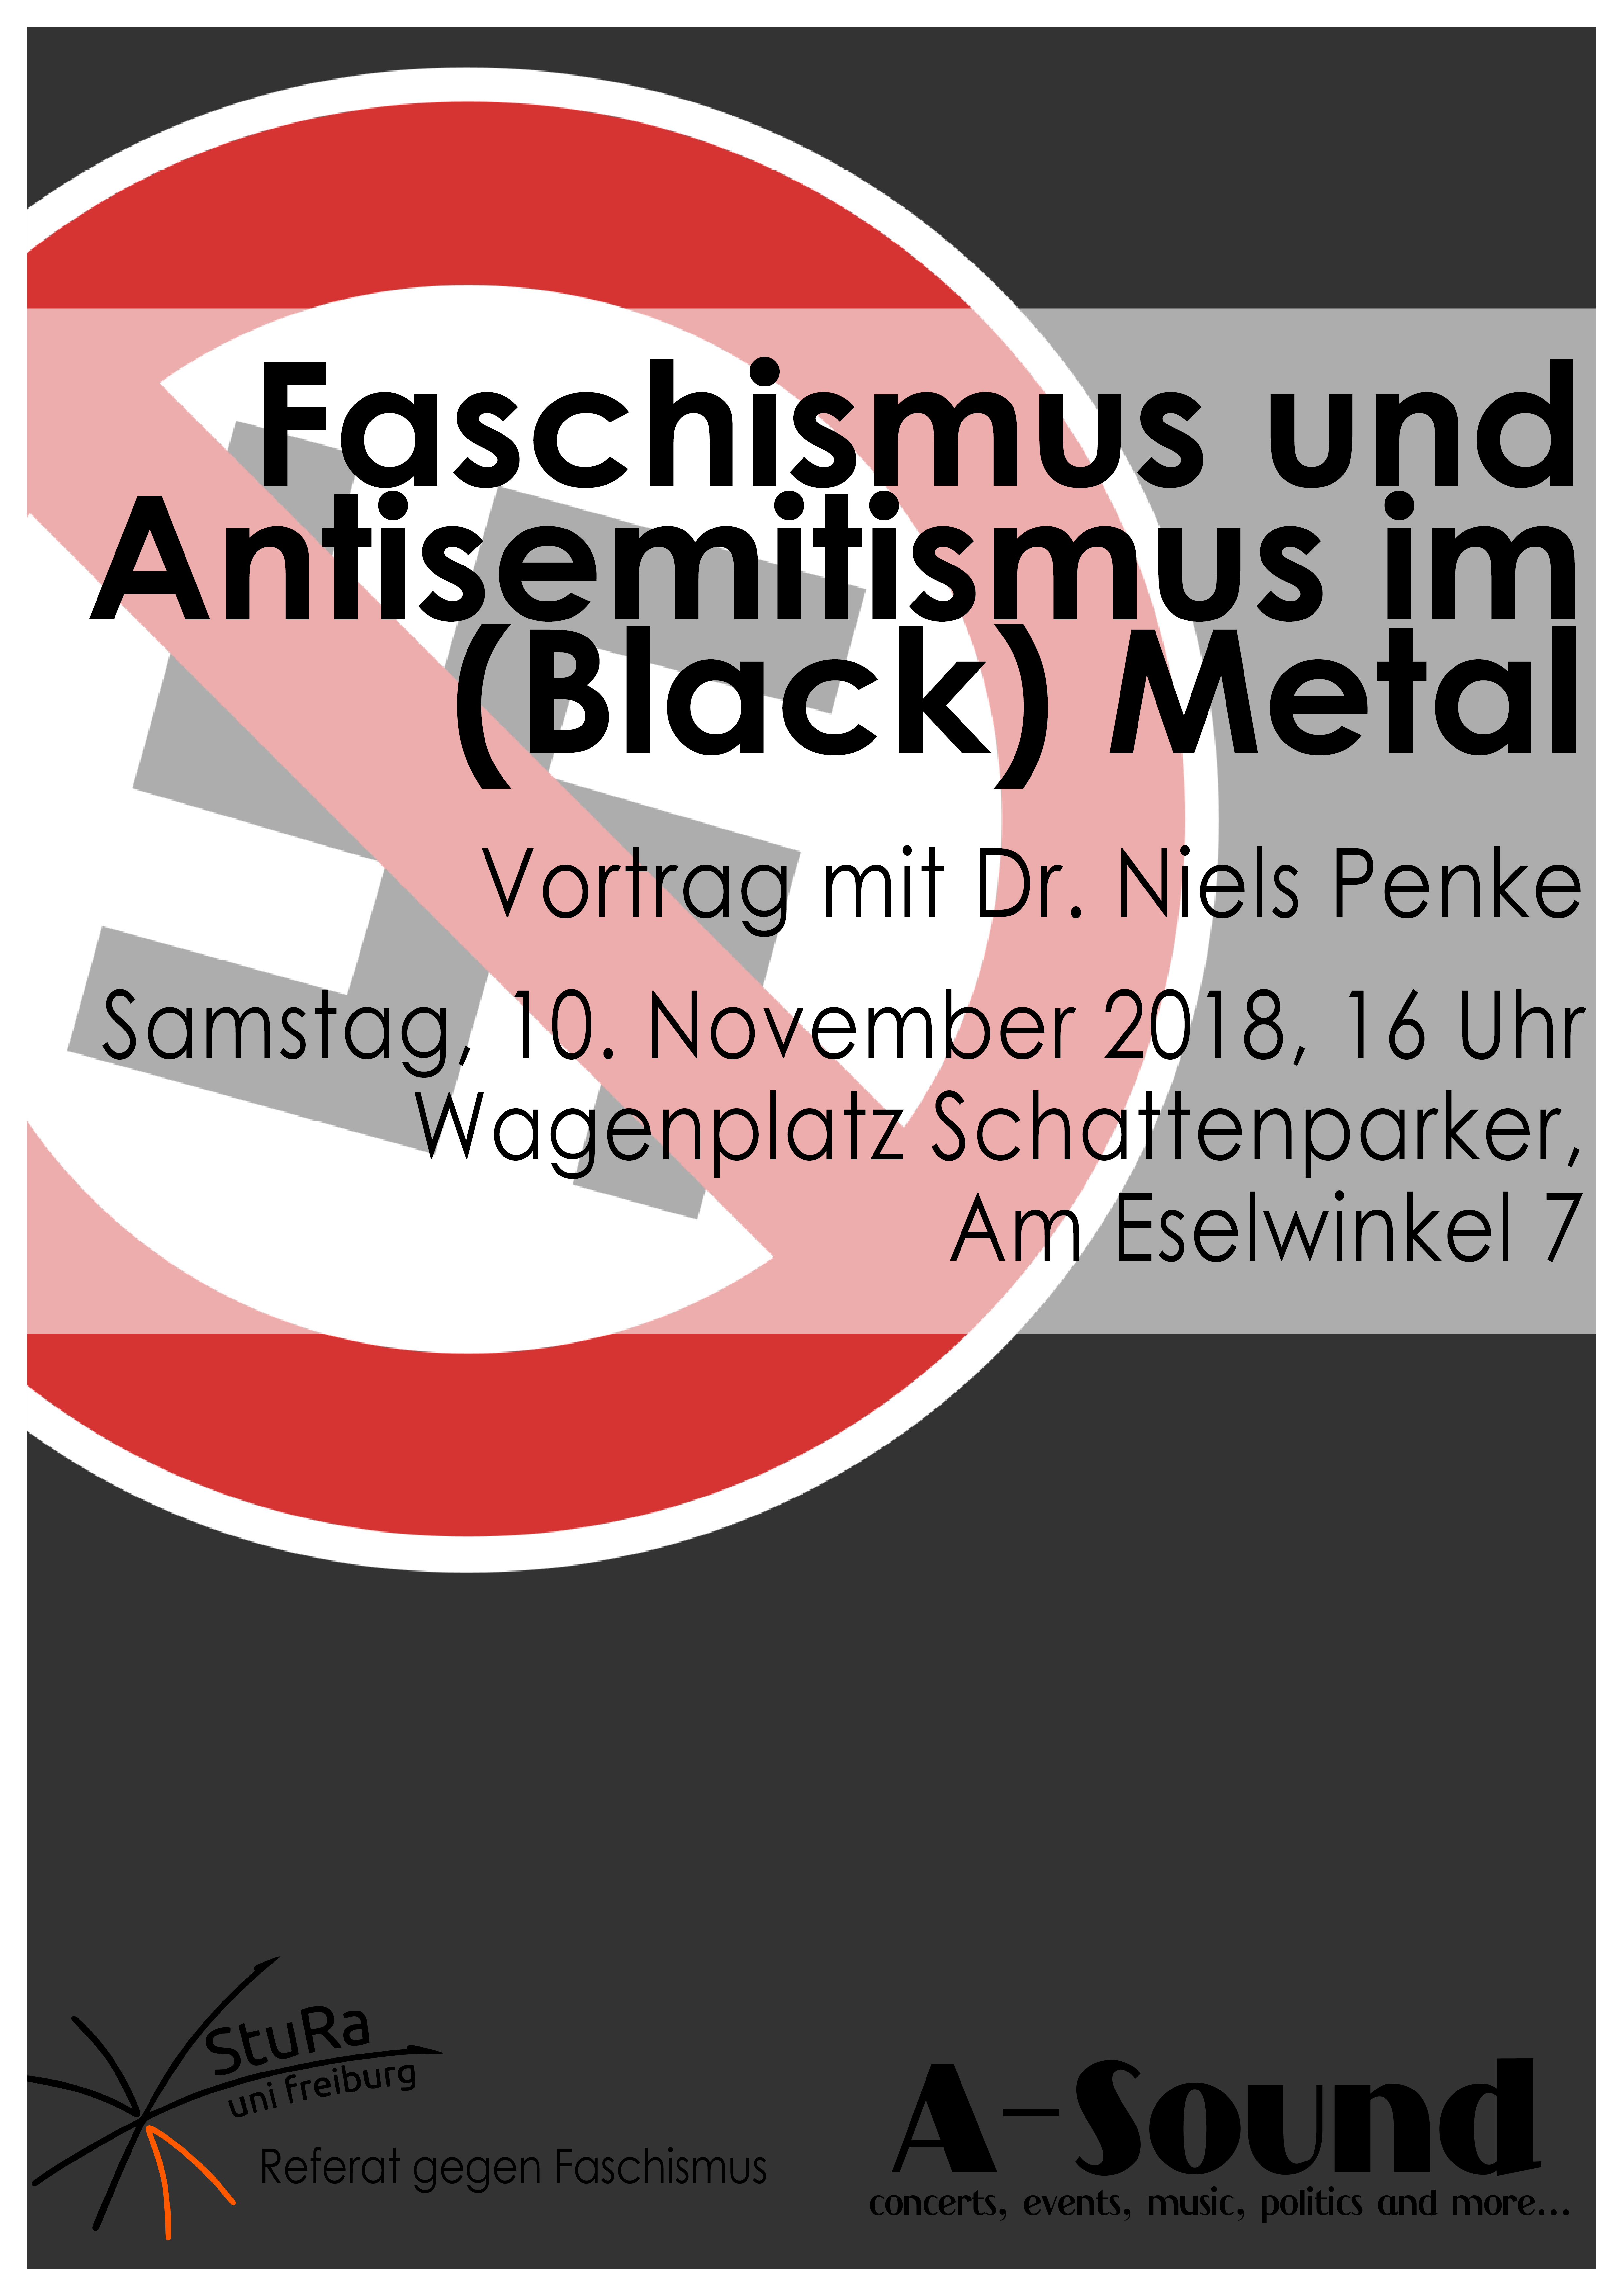 Faschismus und Antisemitismus im (Black) Metal - Plakat - Webversion